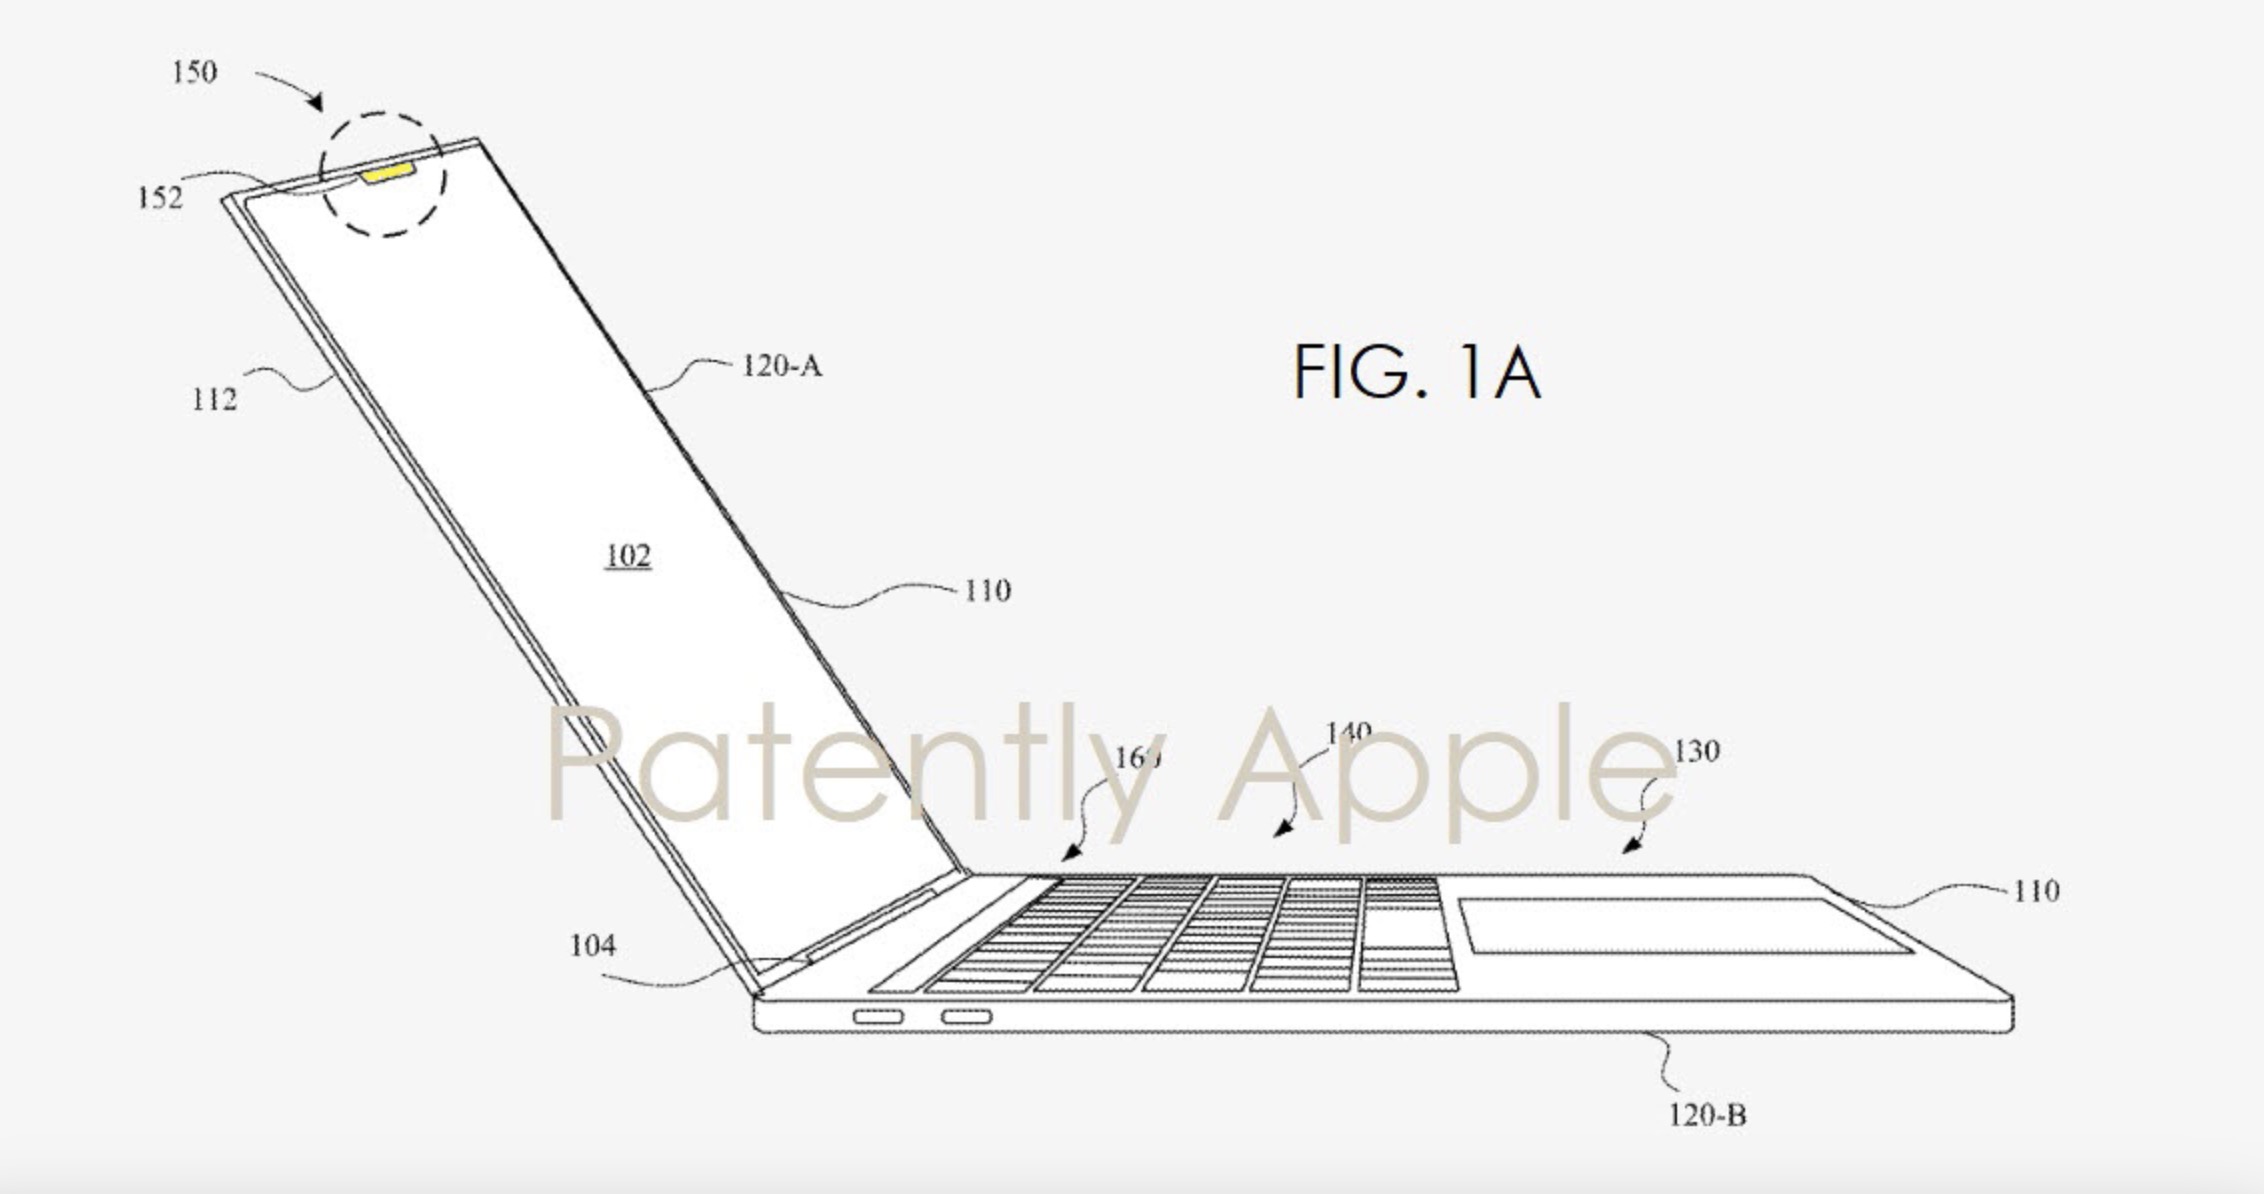 Uma patente mostrando um MacBook, obtido pela Patently Apple.